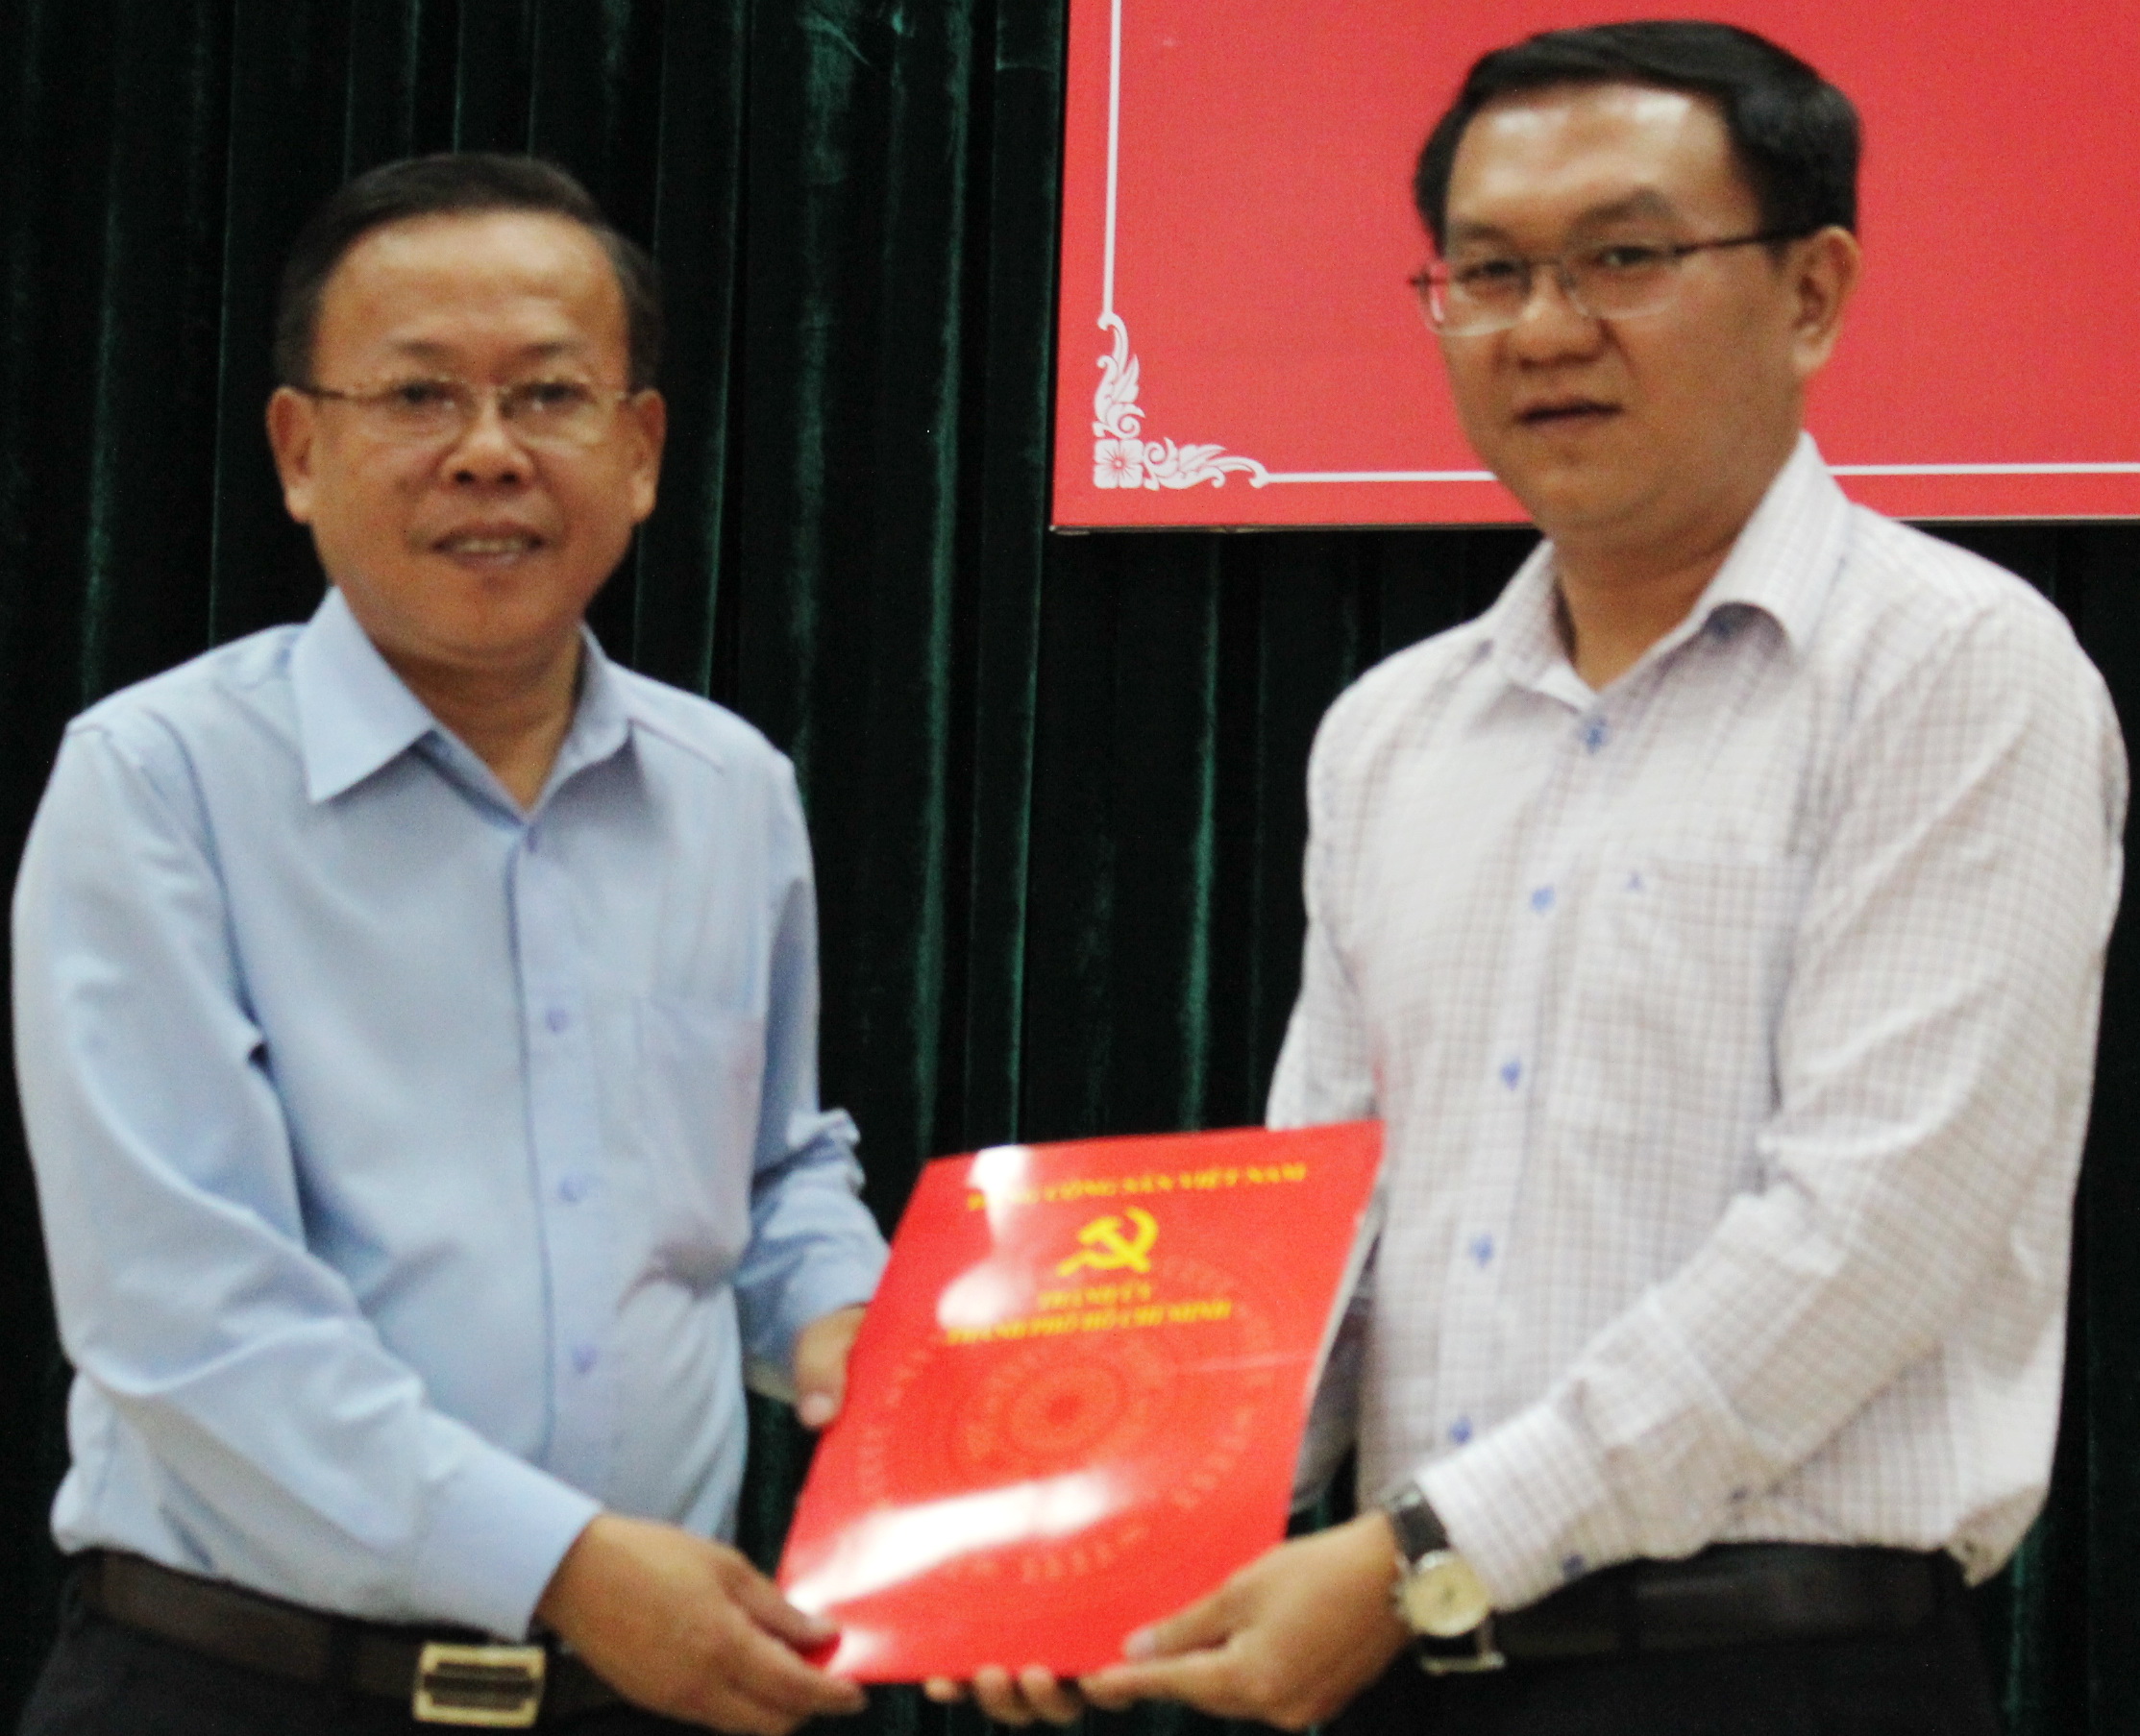 Trưởng ban tổ chức Thành ủy TP.HCM Nguyễn Hữu Hiệp trao quyết định điều động cho anh Lâm Đình Thắng (phải) - Ảnh: Q.L.